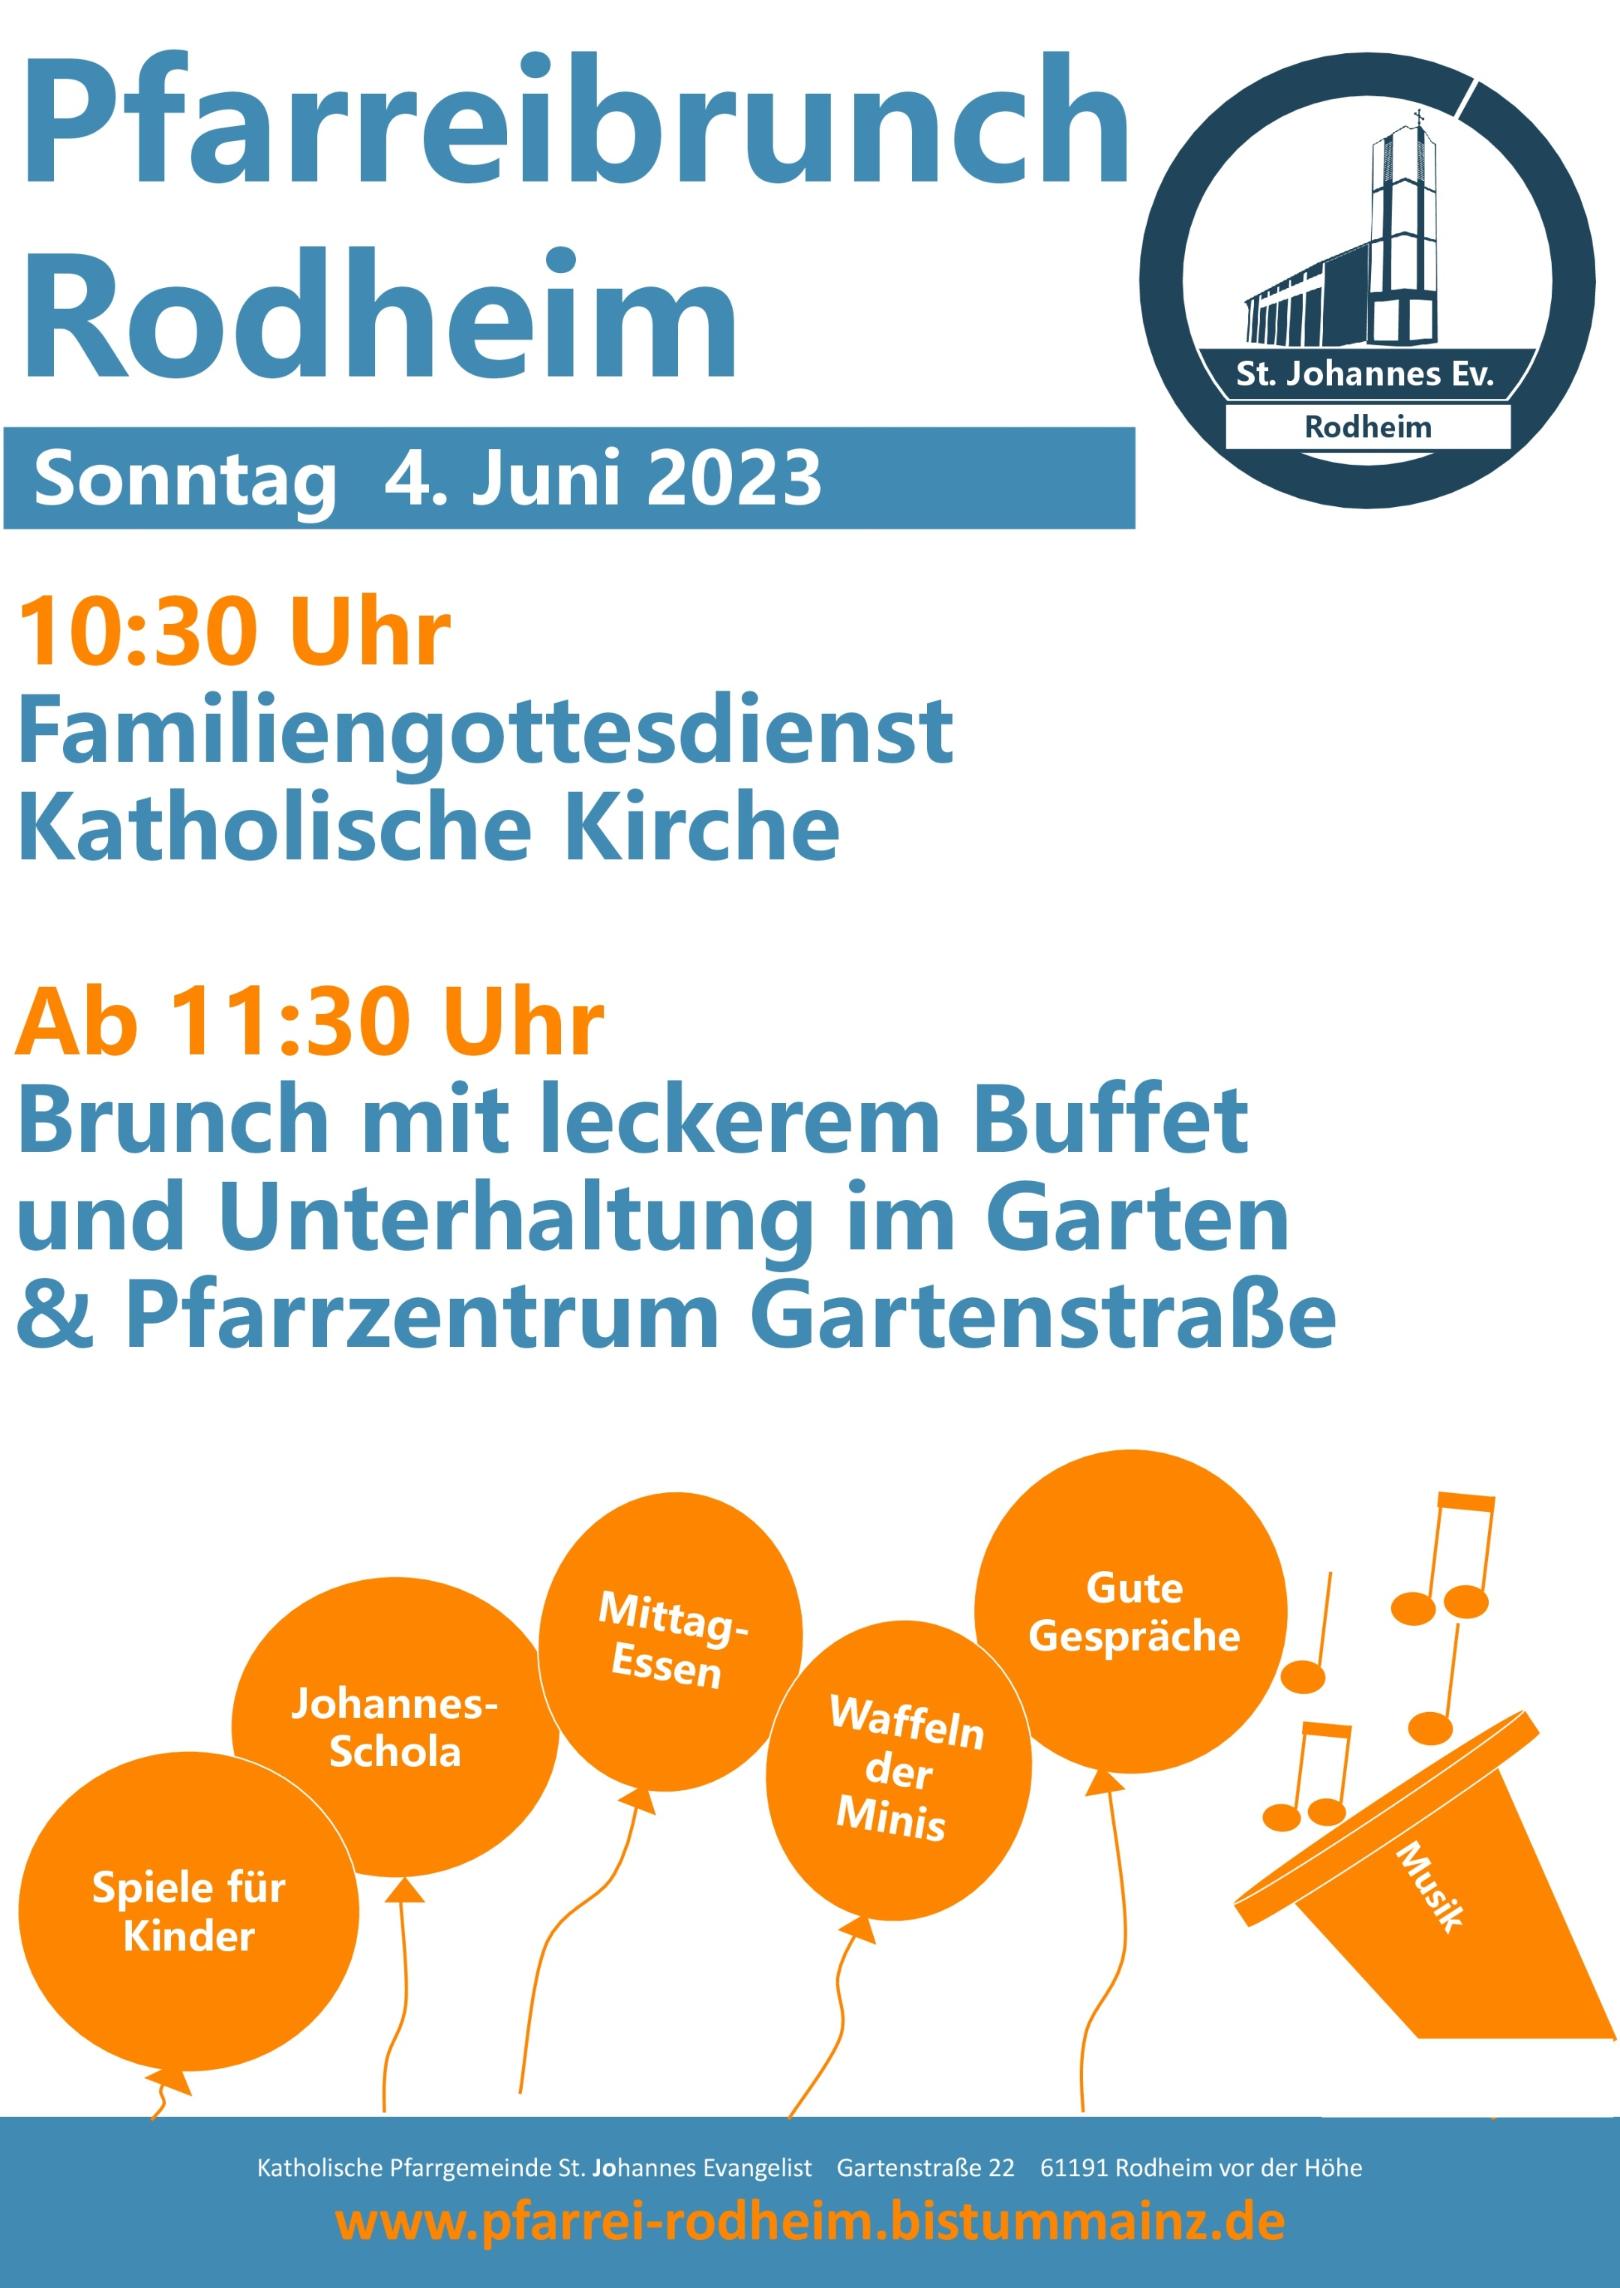 Einladung Pfarreibrunch 2023 (c) Gemeinde Rodheim